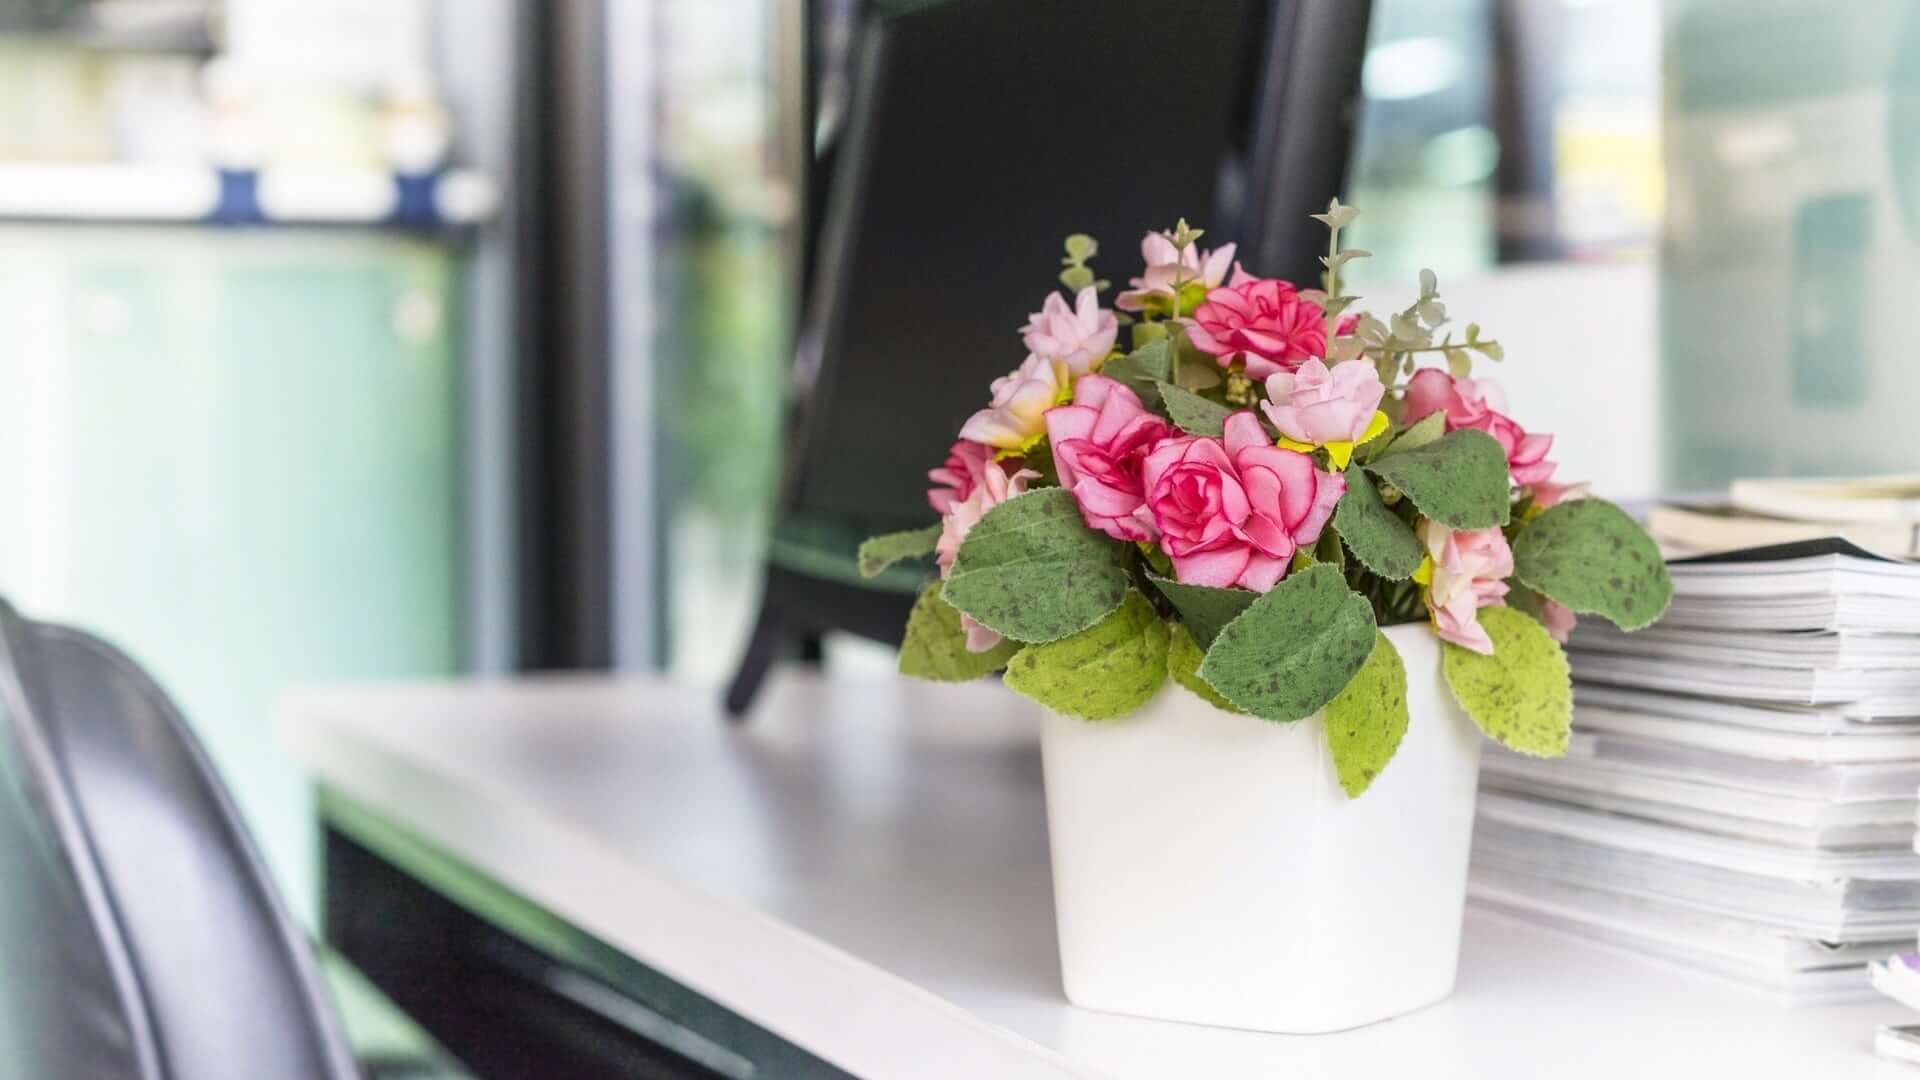 3 positieve effecten van bloemen op kantoor